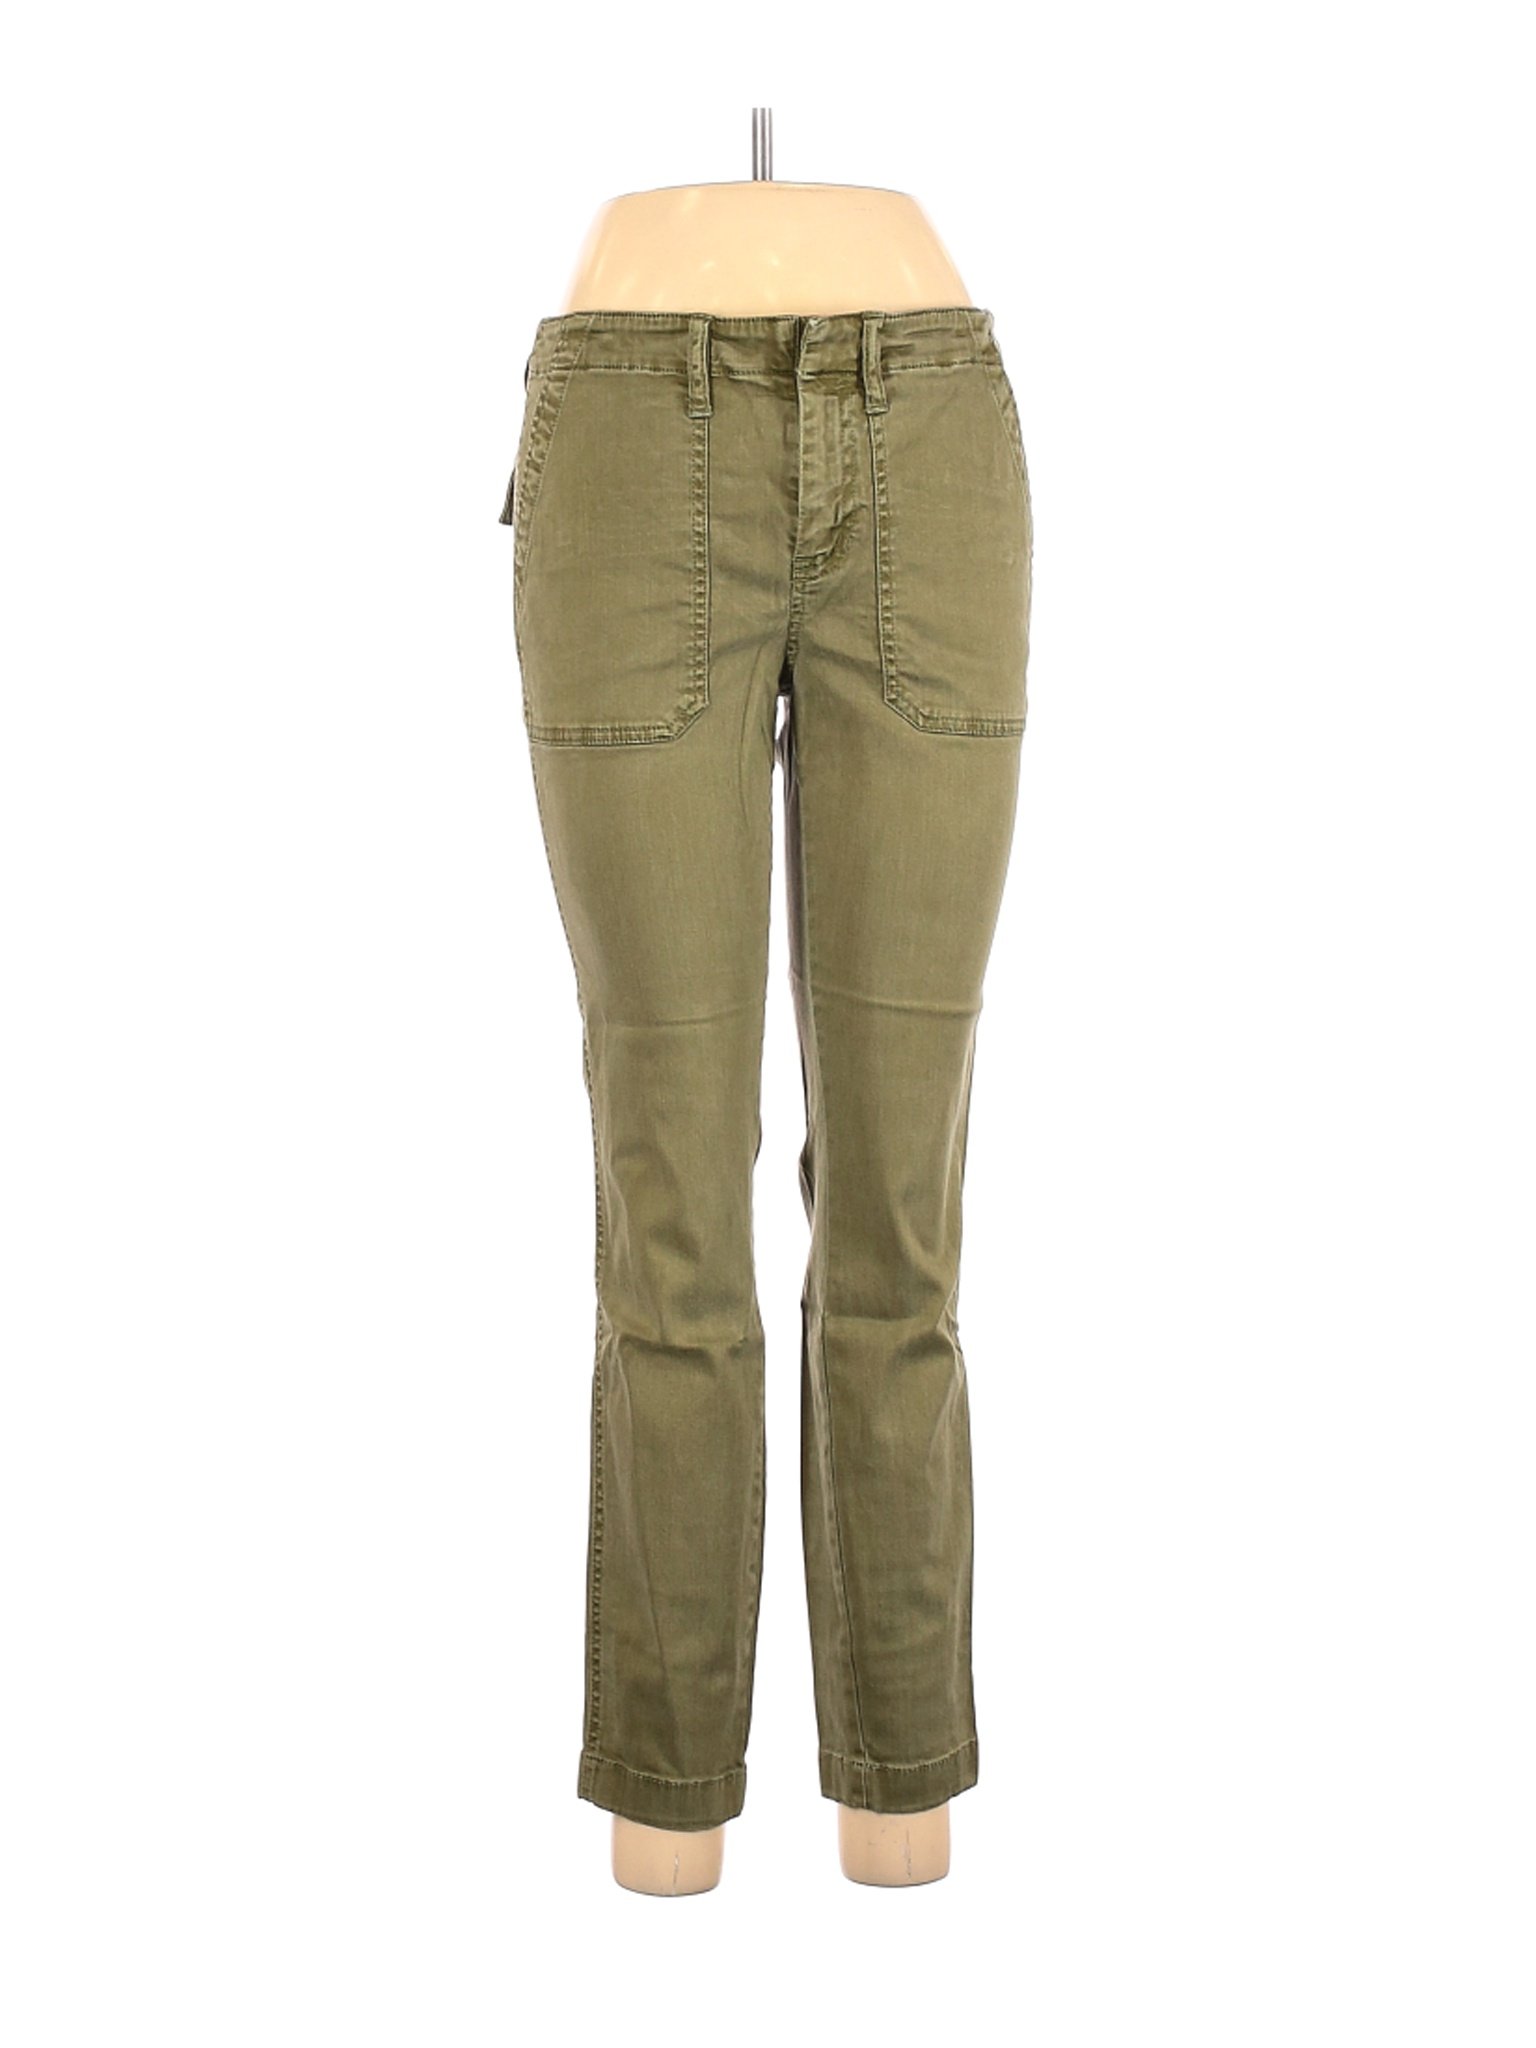 J.Crew Women Green Casual Pants 29W | eBay